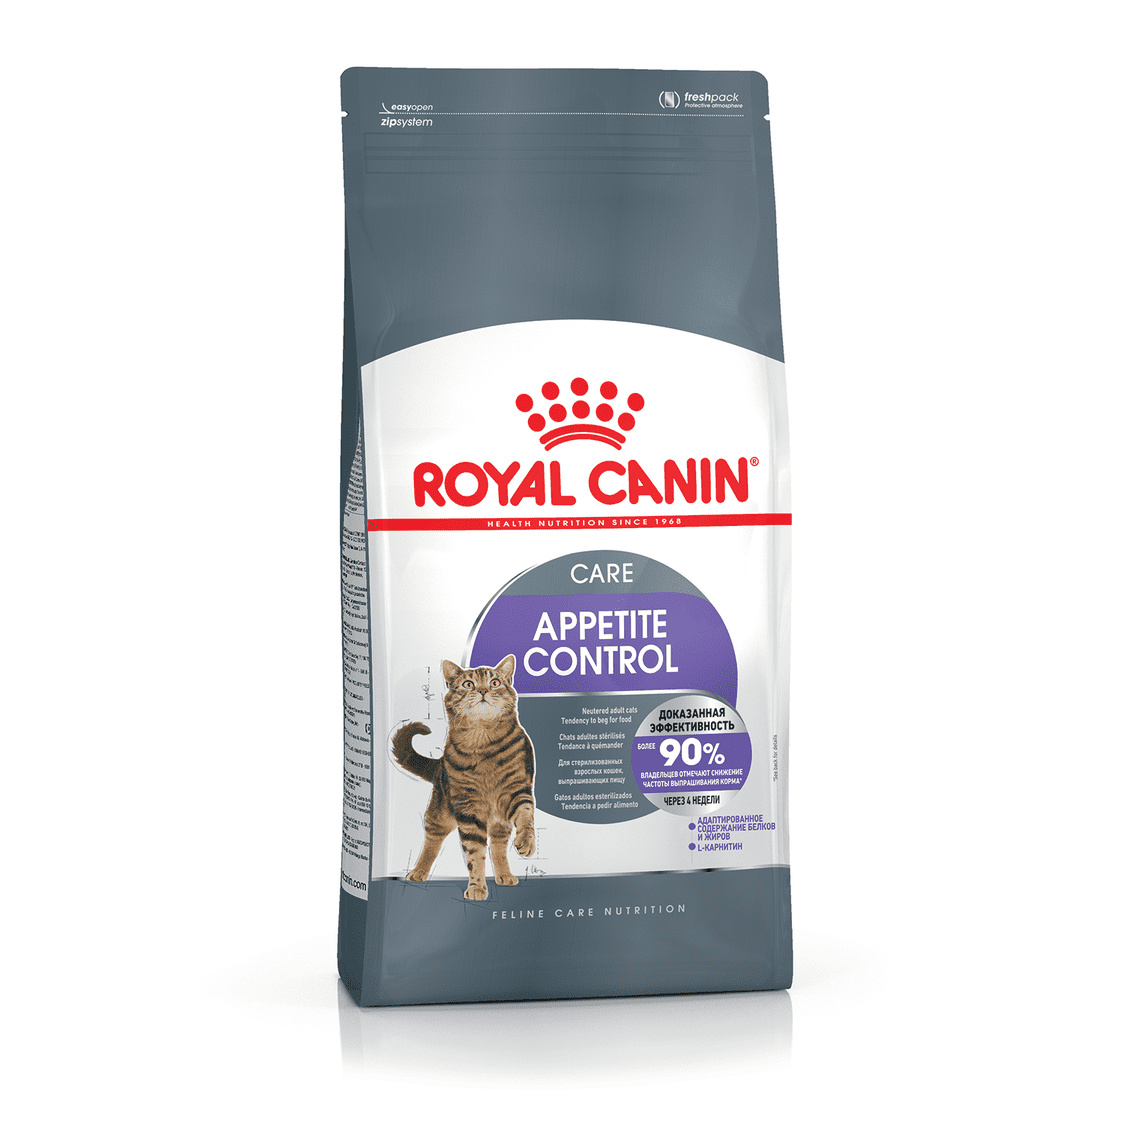 для взрослых кошек, рекомендуется для контроля выпрашивания корма (3,5 кг) Royal Canin (сухие корма) для взрослых кошек, рекомендуется для контроля выпрашивания корма (3,5 кг) - фото 1